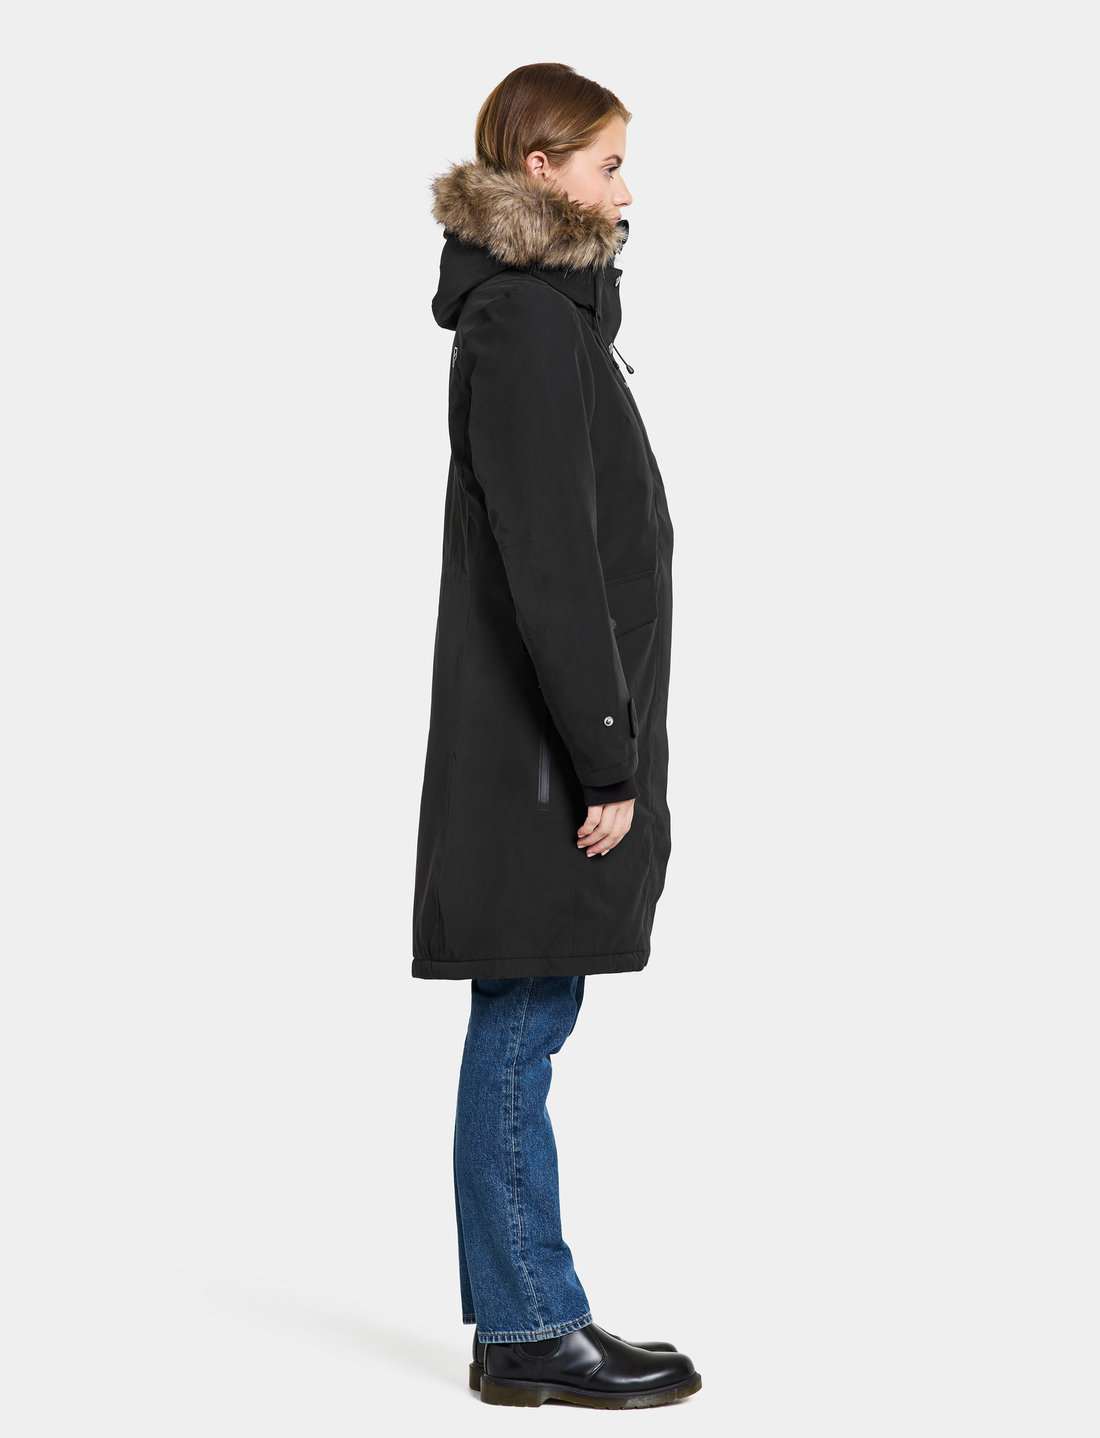 Didriksons Erika Wns Parka 3 – jackets & coats – shop at Booztlet